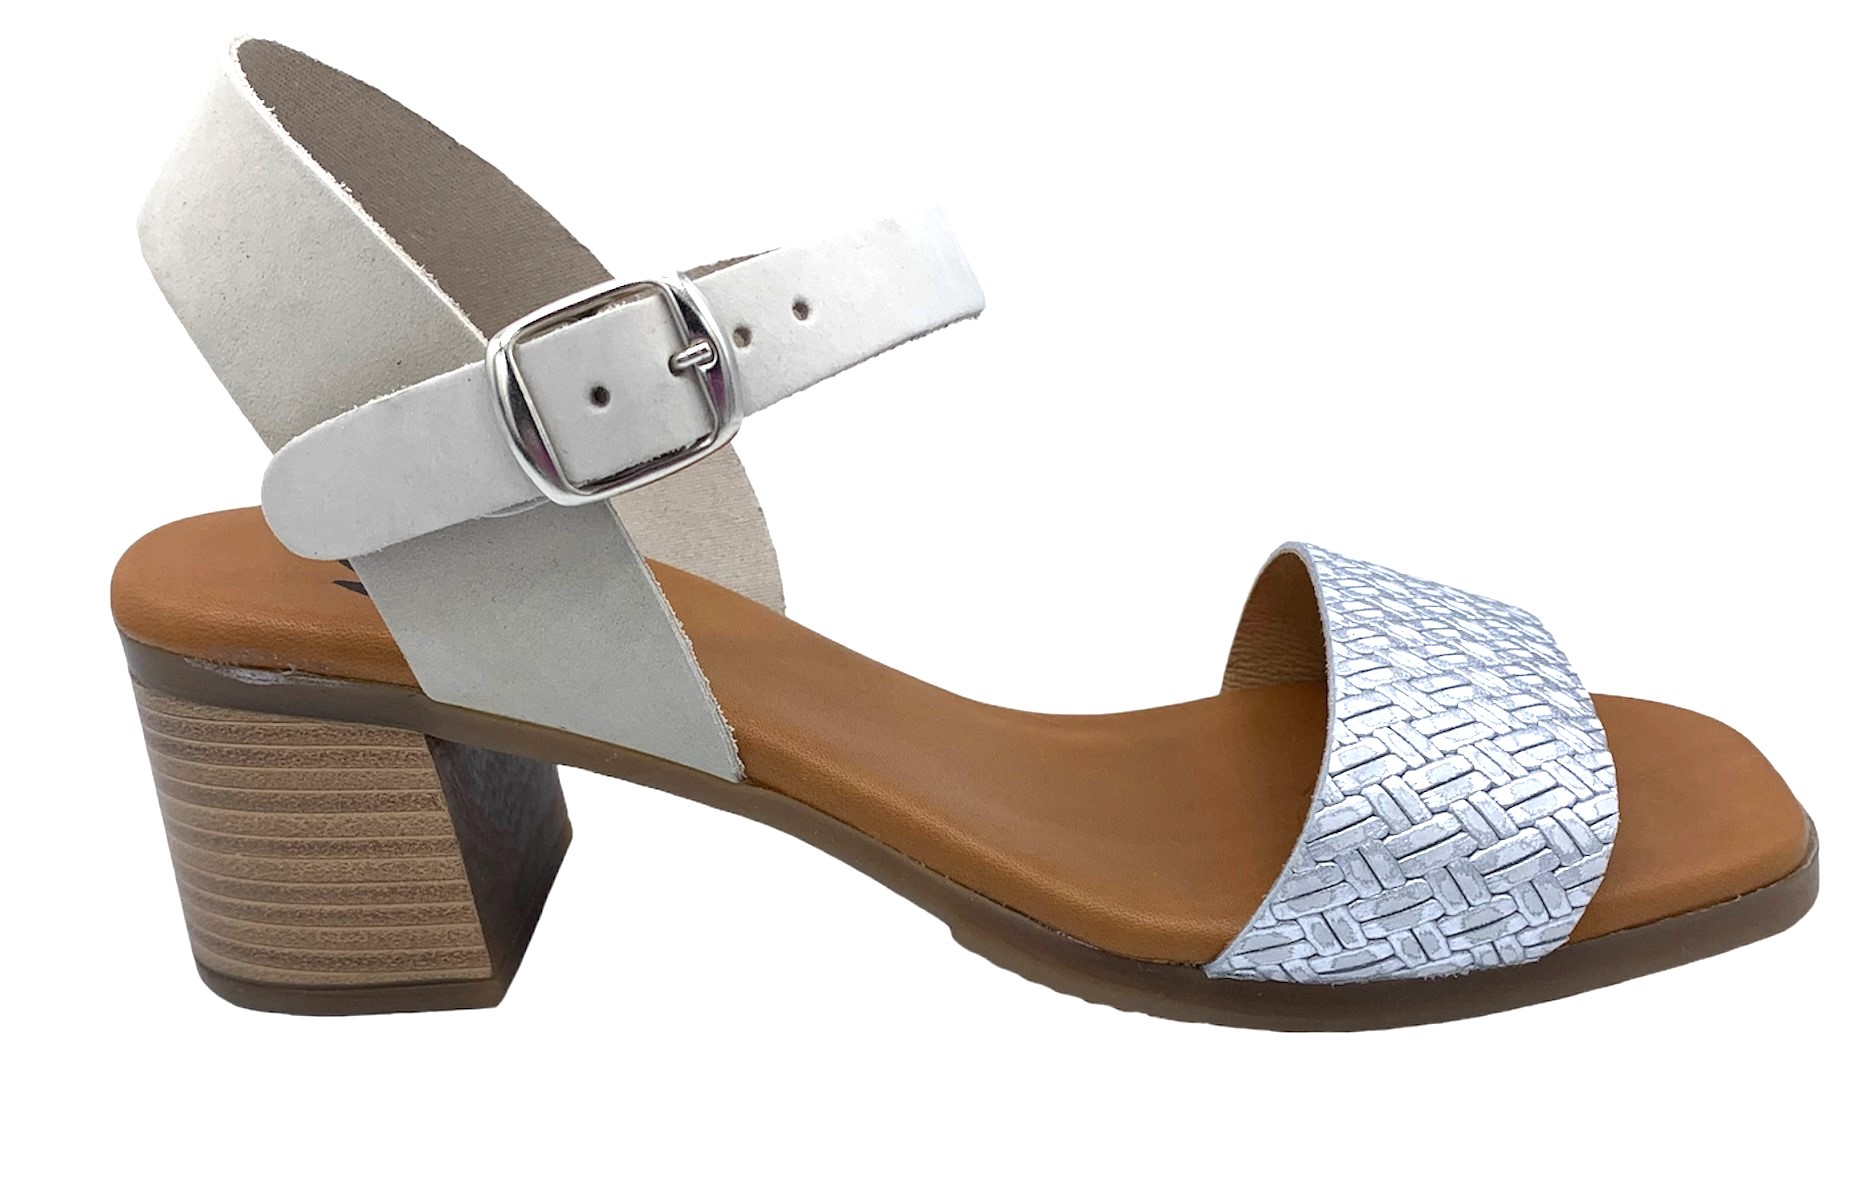 Dámské kožené sandále na podpatku MISSTIC 116004 sv.šedé Velikost: 39 (EU)